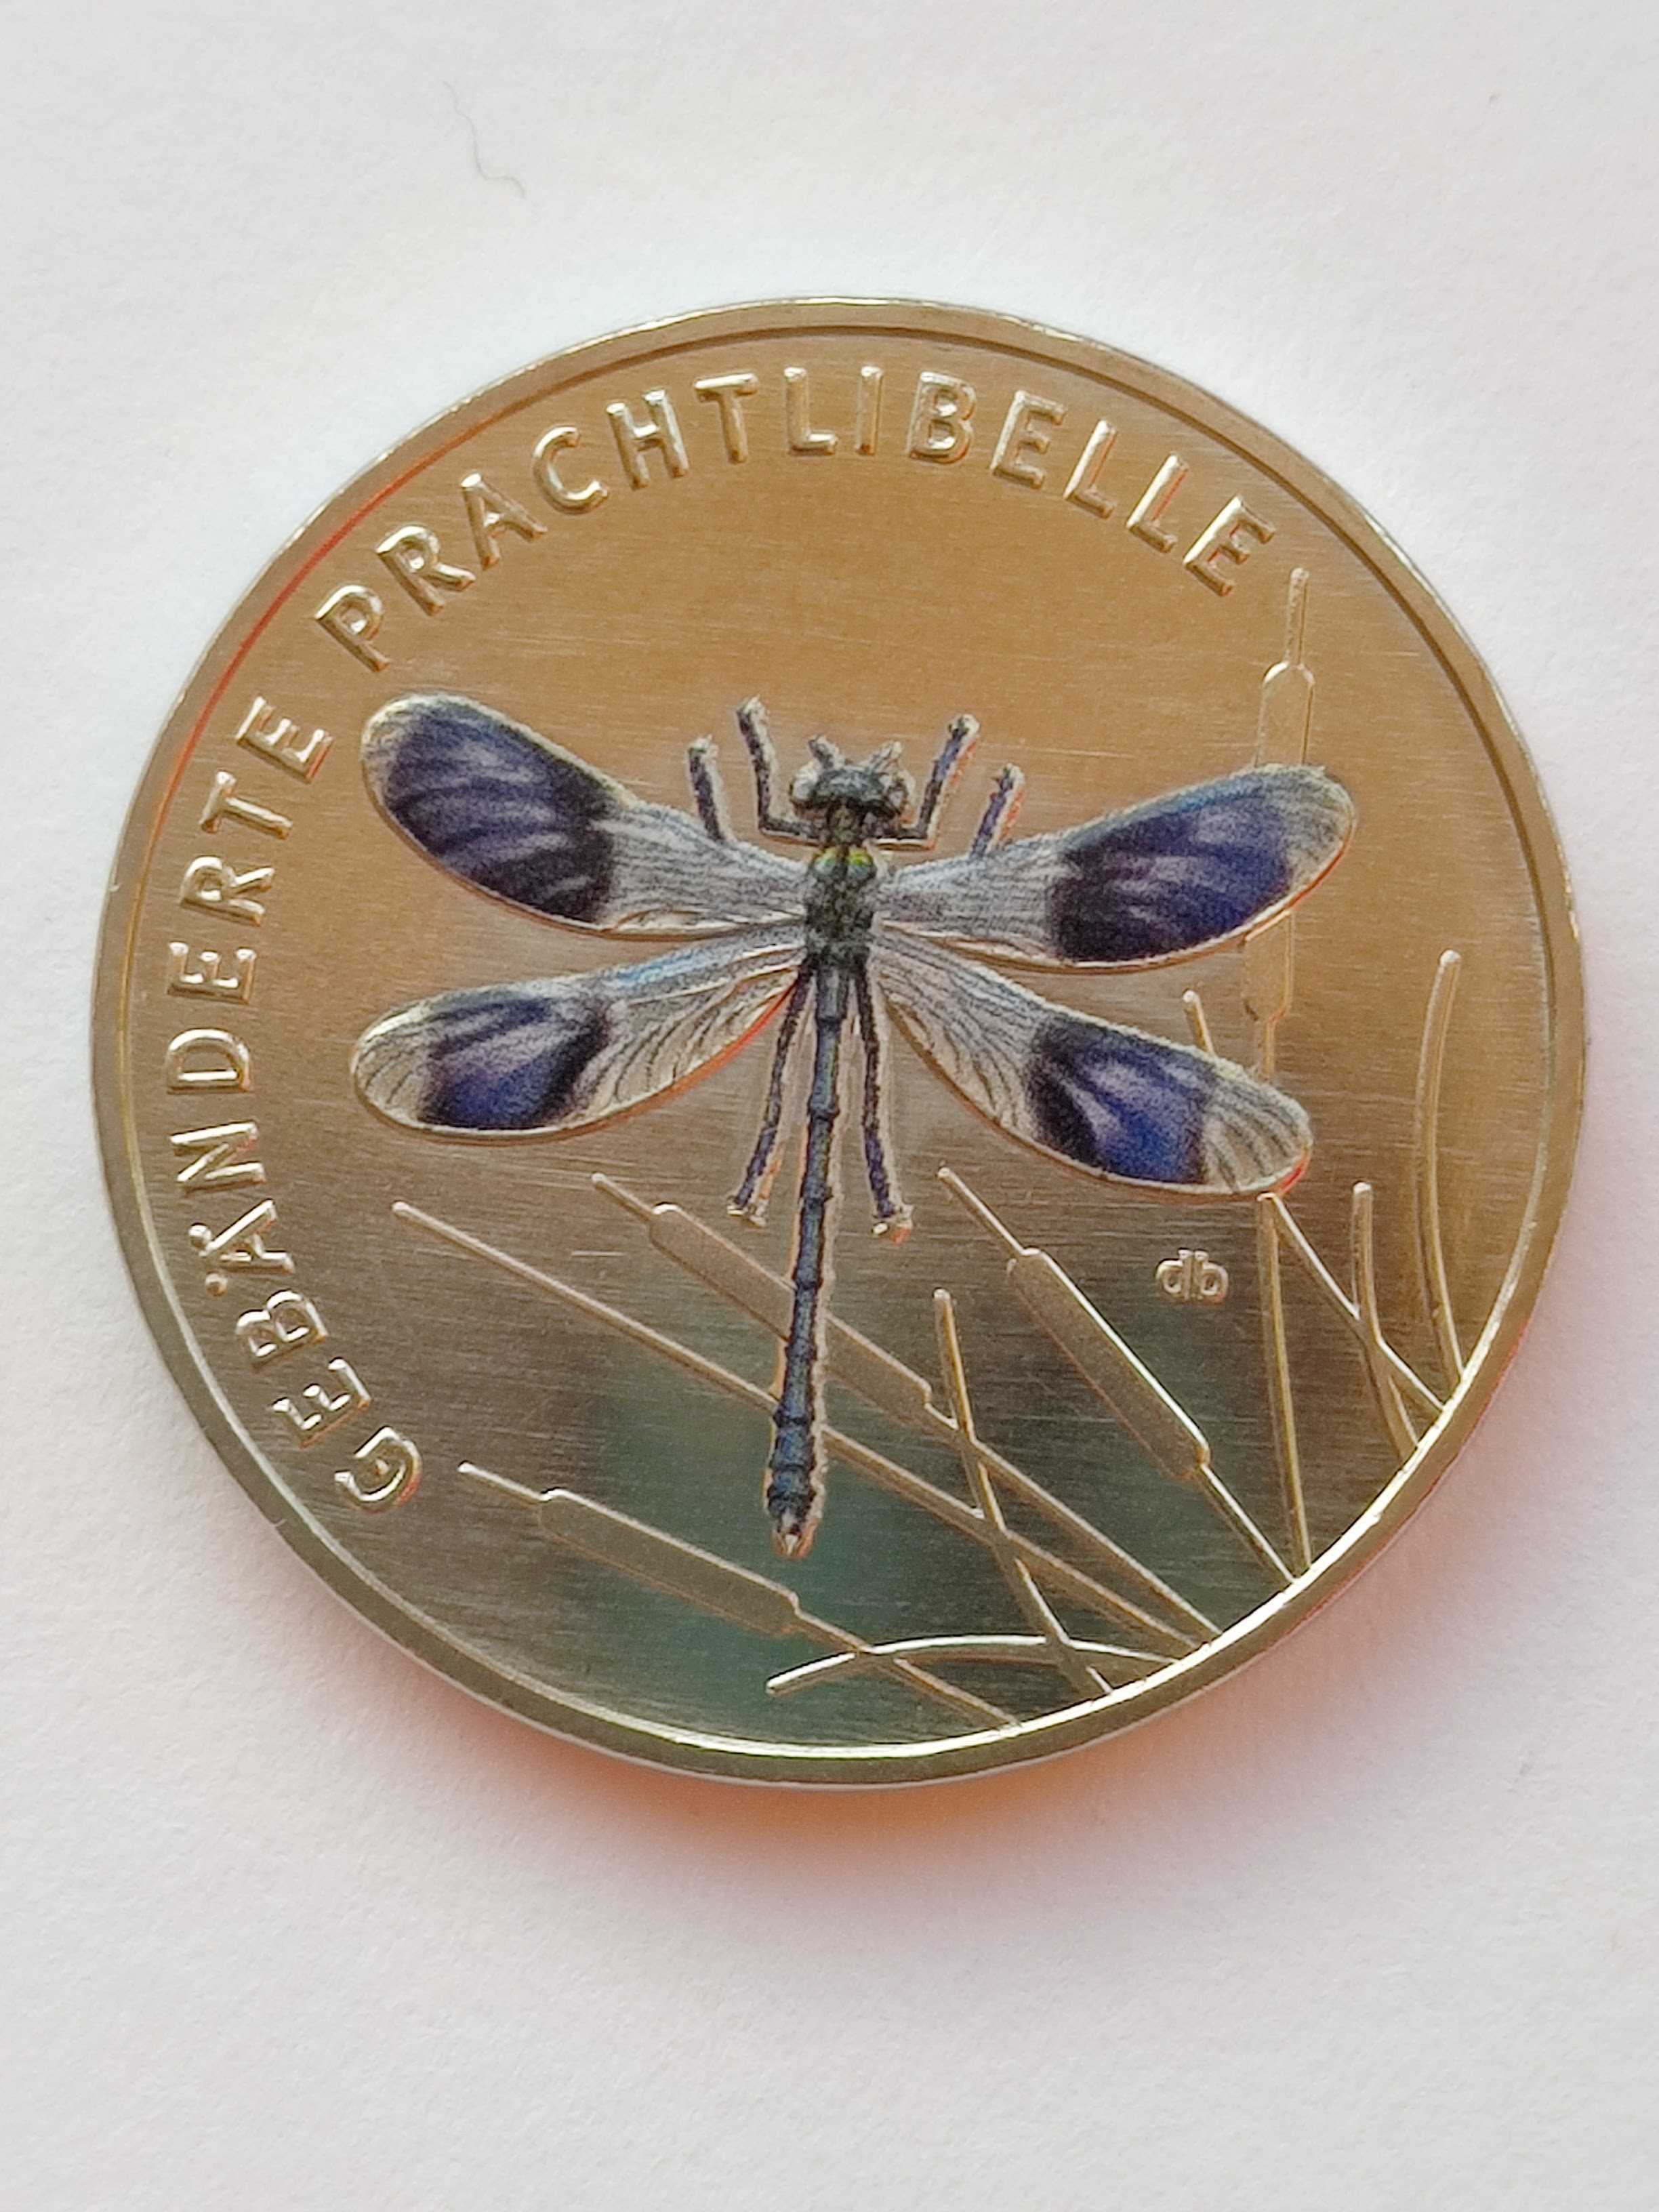 Монеты Германии-5 ЕВРО бабочка, божья коровка, стрекоза.